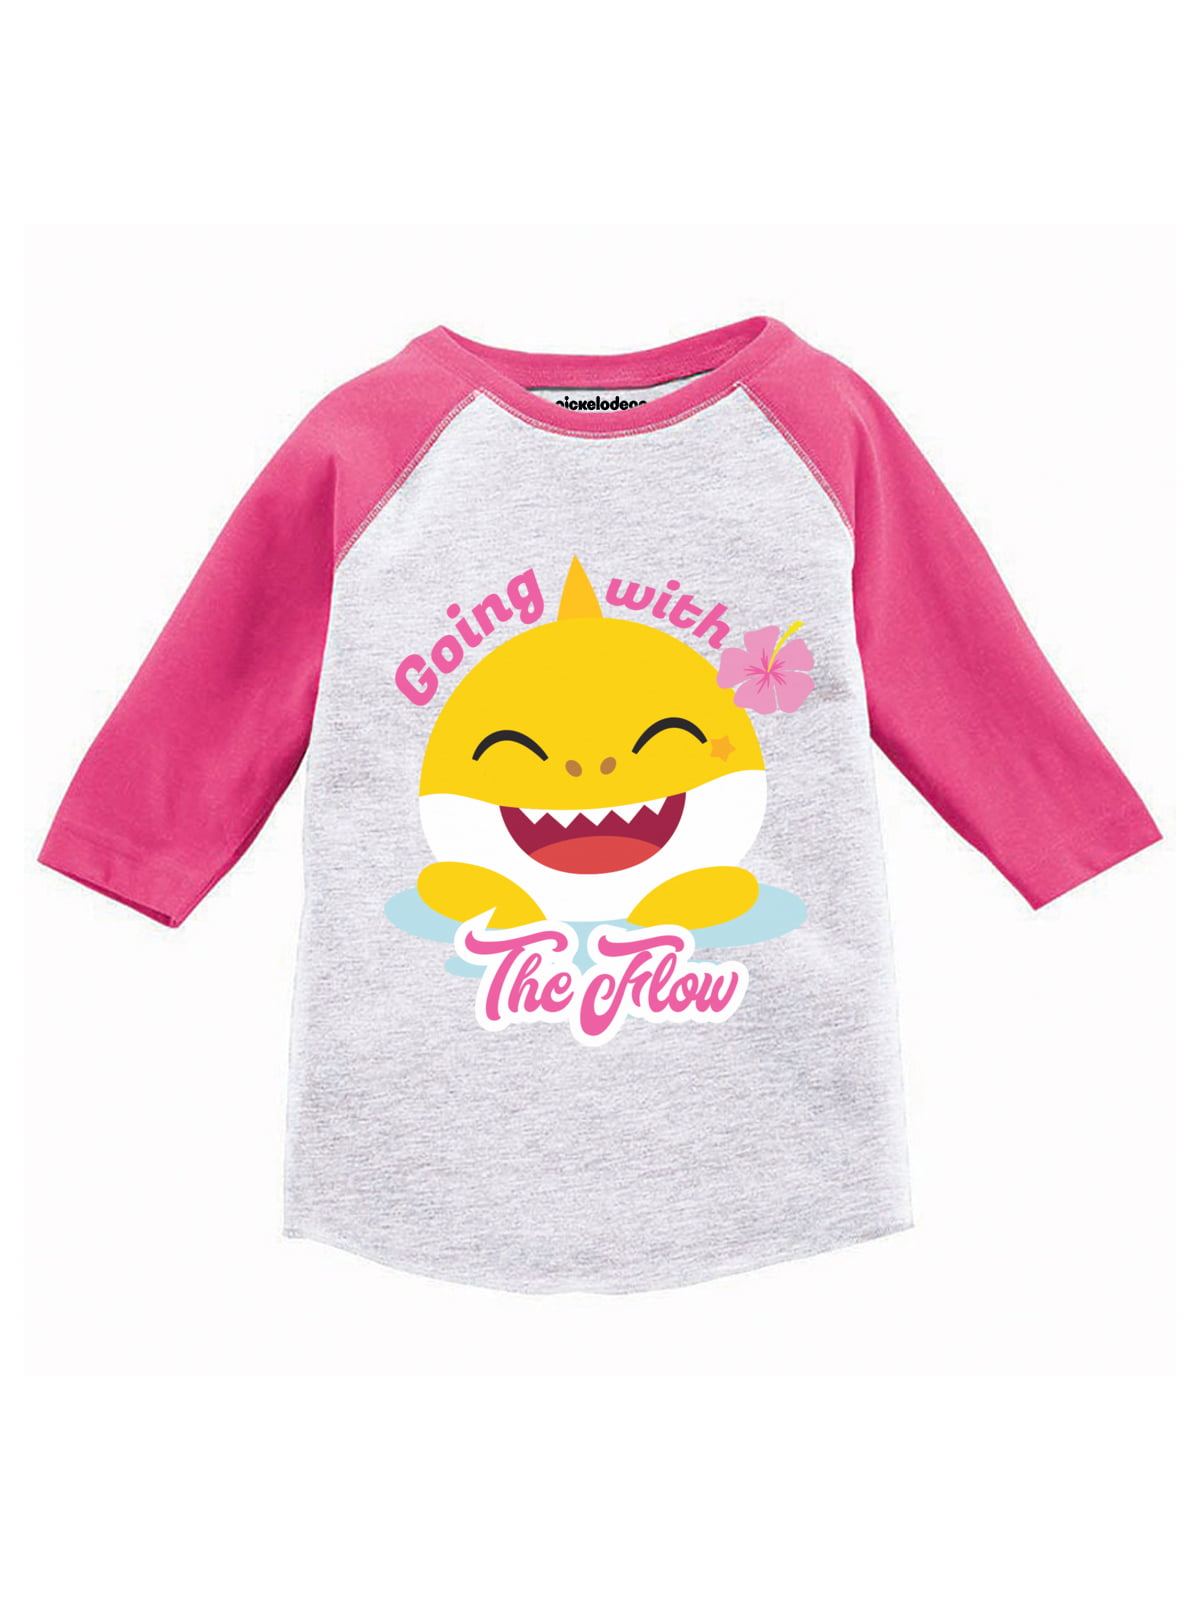 Baby Shark Shirt for Toddler Boys Girls - Baby Shark Long Sleeve 